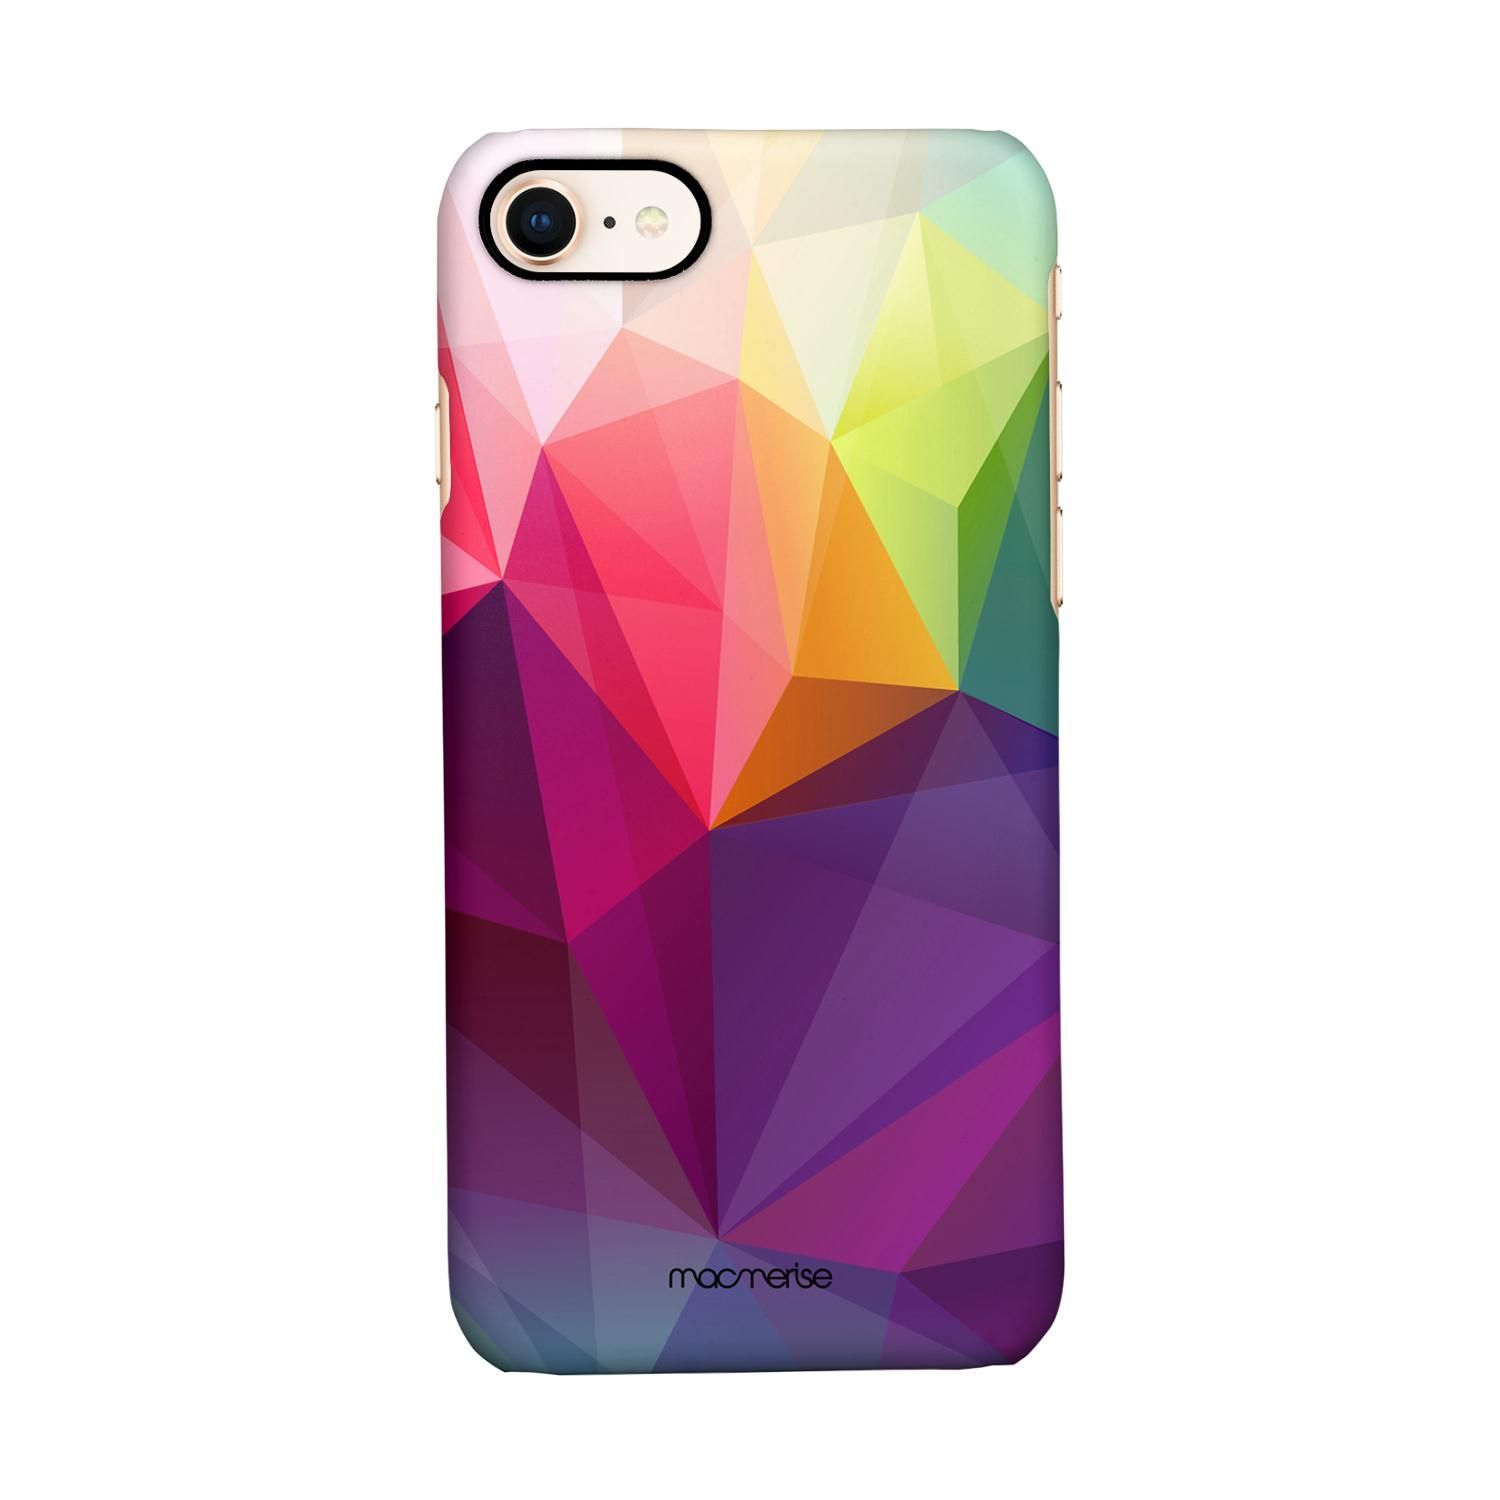 Buy Crystal Art - Sleek Phone Case for iPhone 7 Online